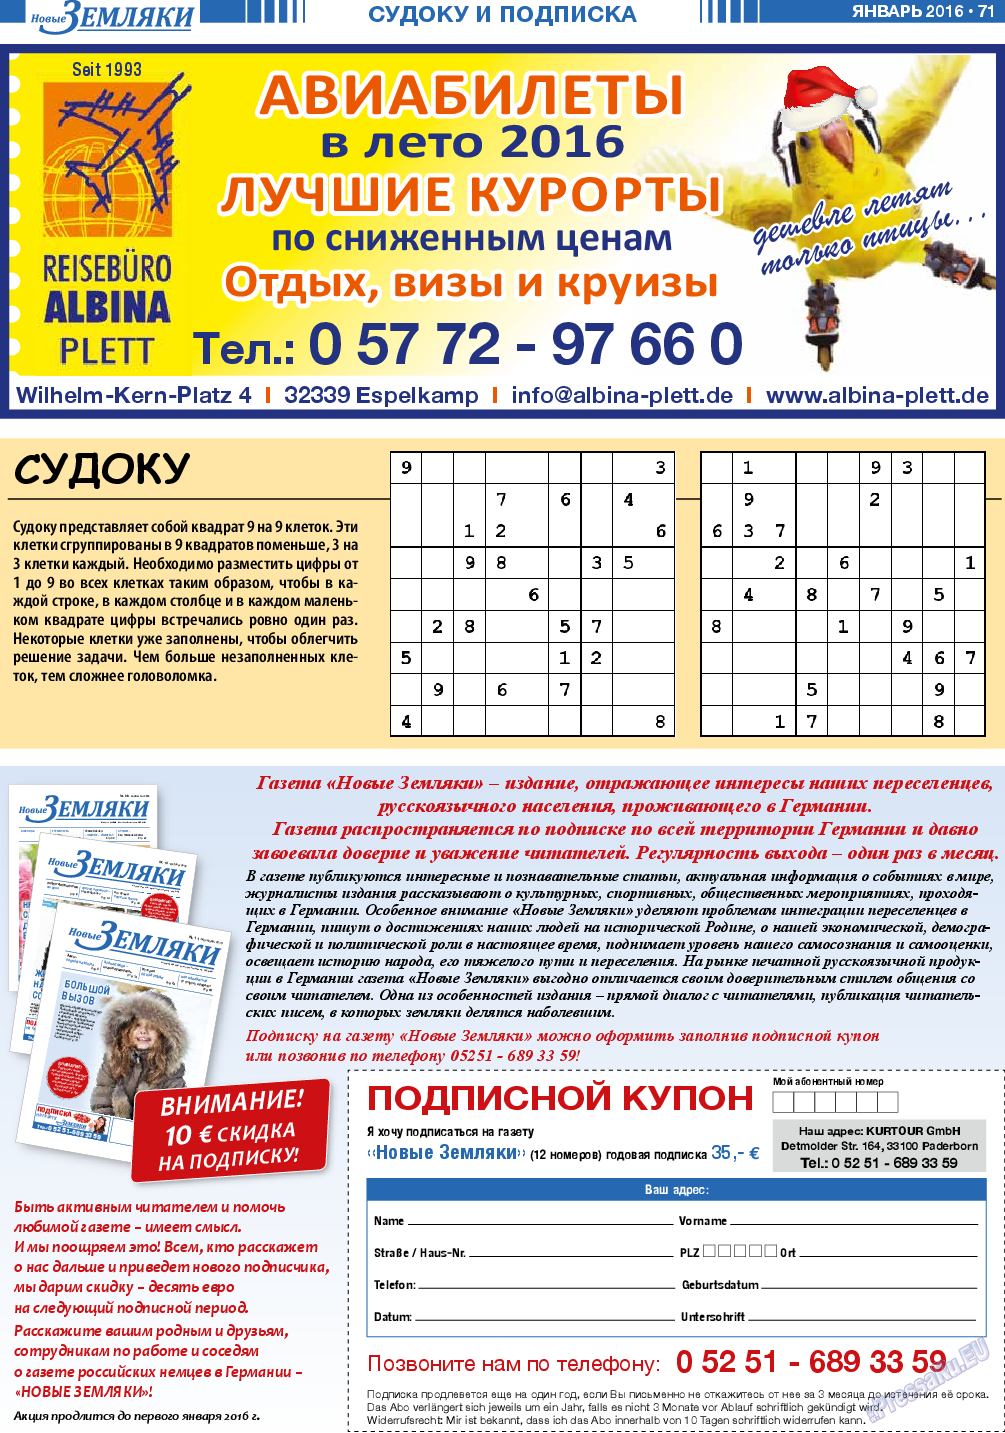 Новые Земляки, газета. 2016 №1 стр.71